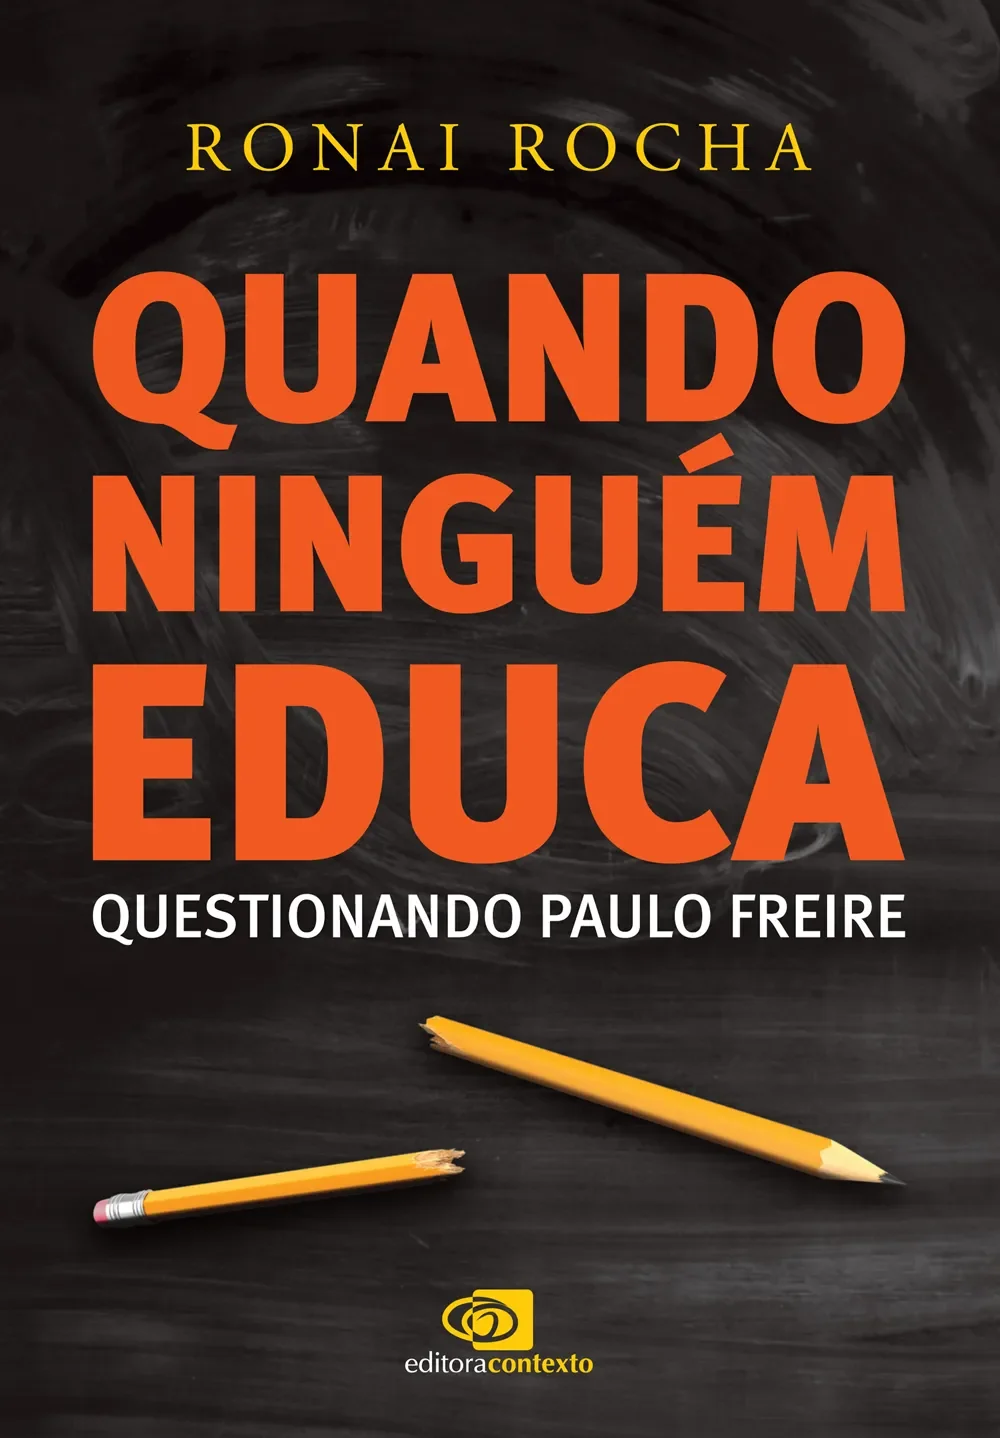 Paulo Freire por Ivan Mesquita. 